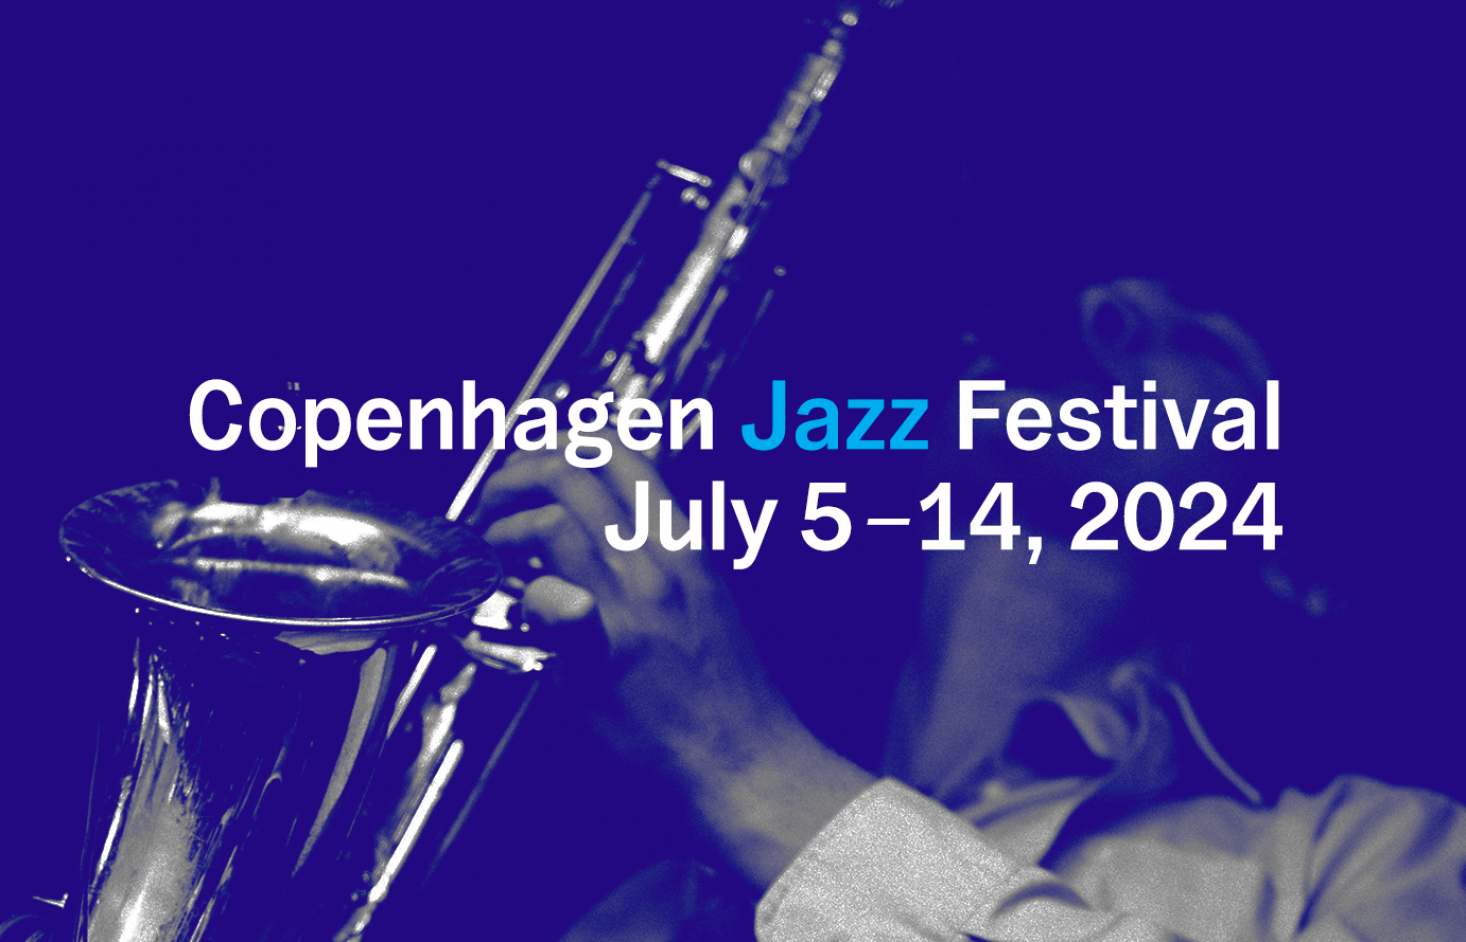 Copenhagen Jazz Festival 2024 – July 5-14